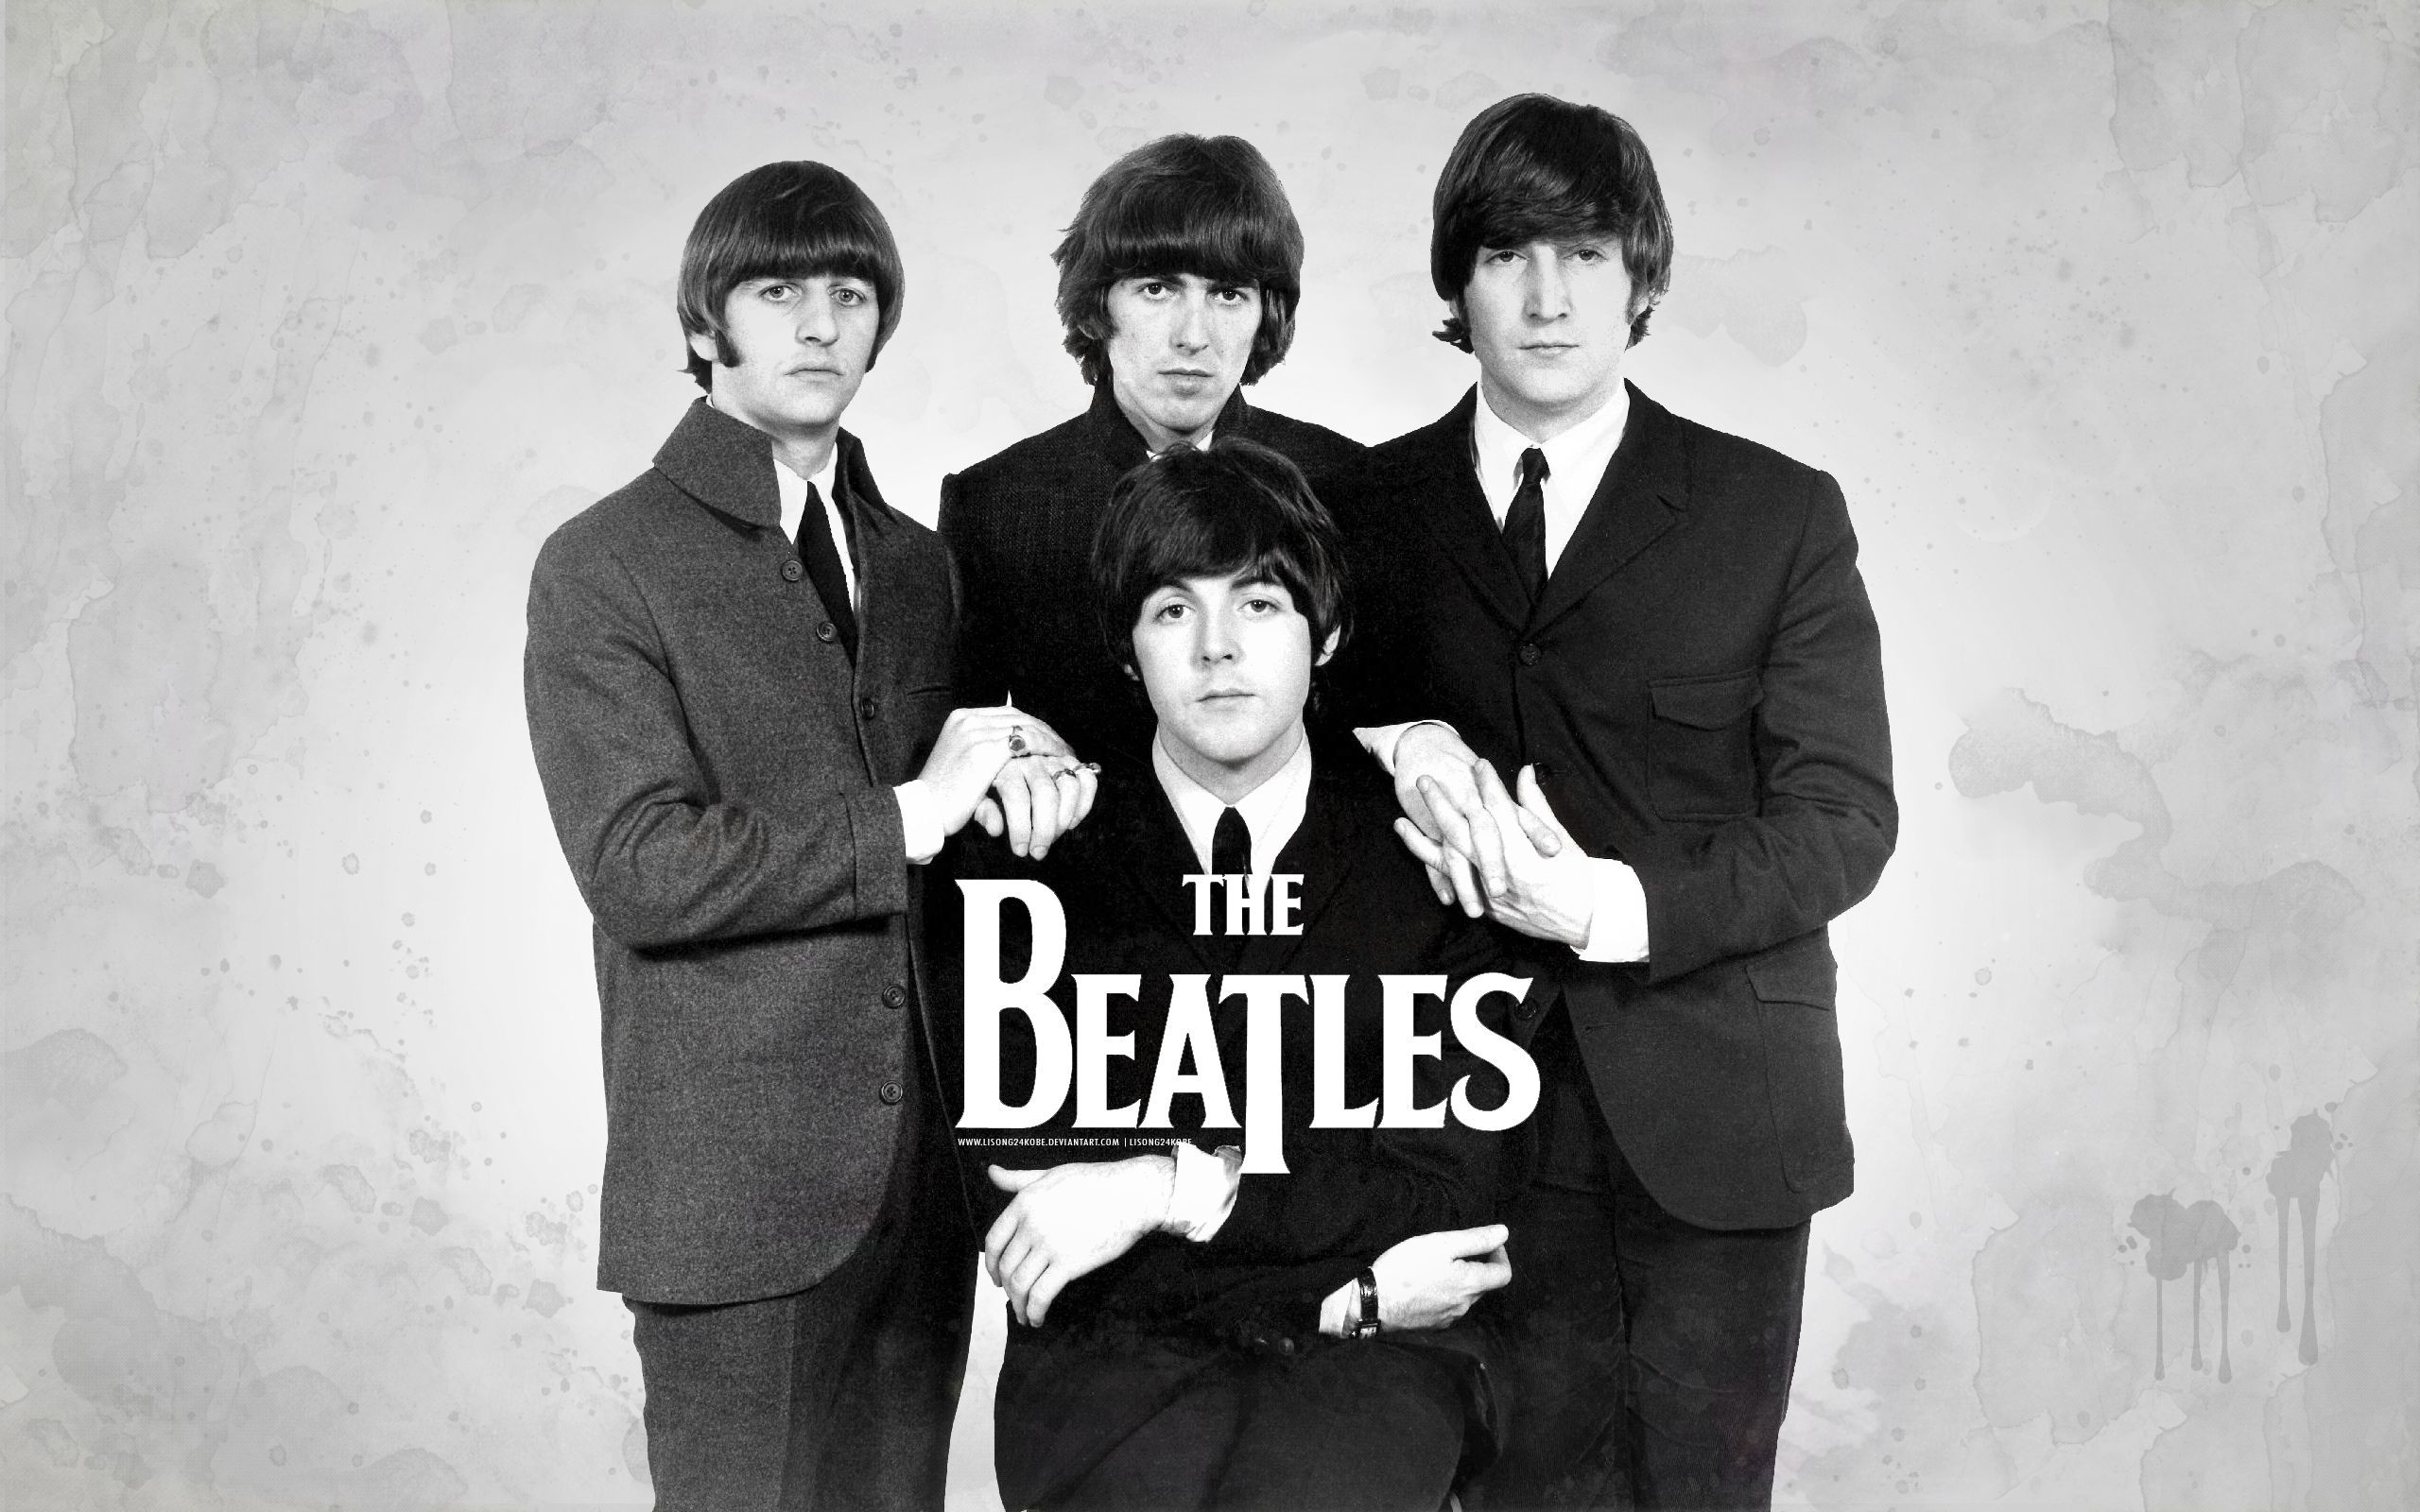 The Beatles Wallpaper Free Download 46126 Full HD Wallpaper ...